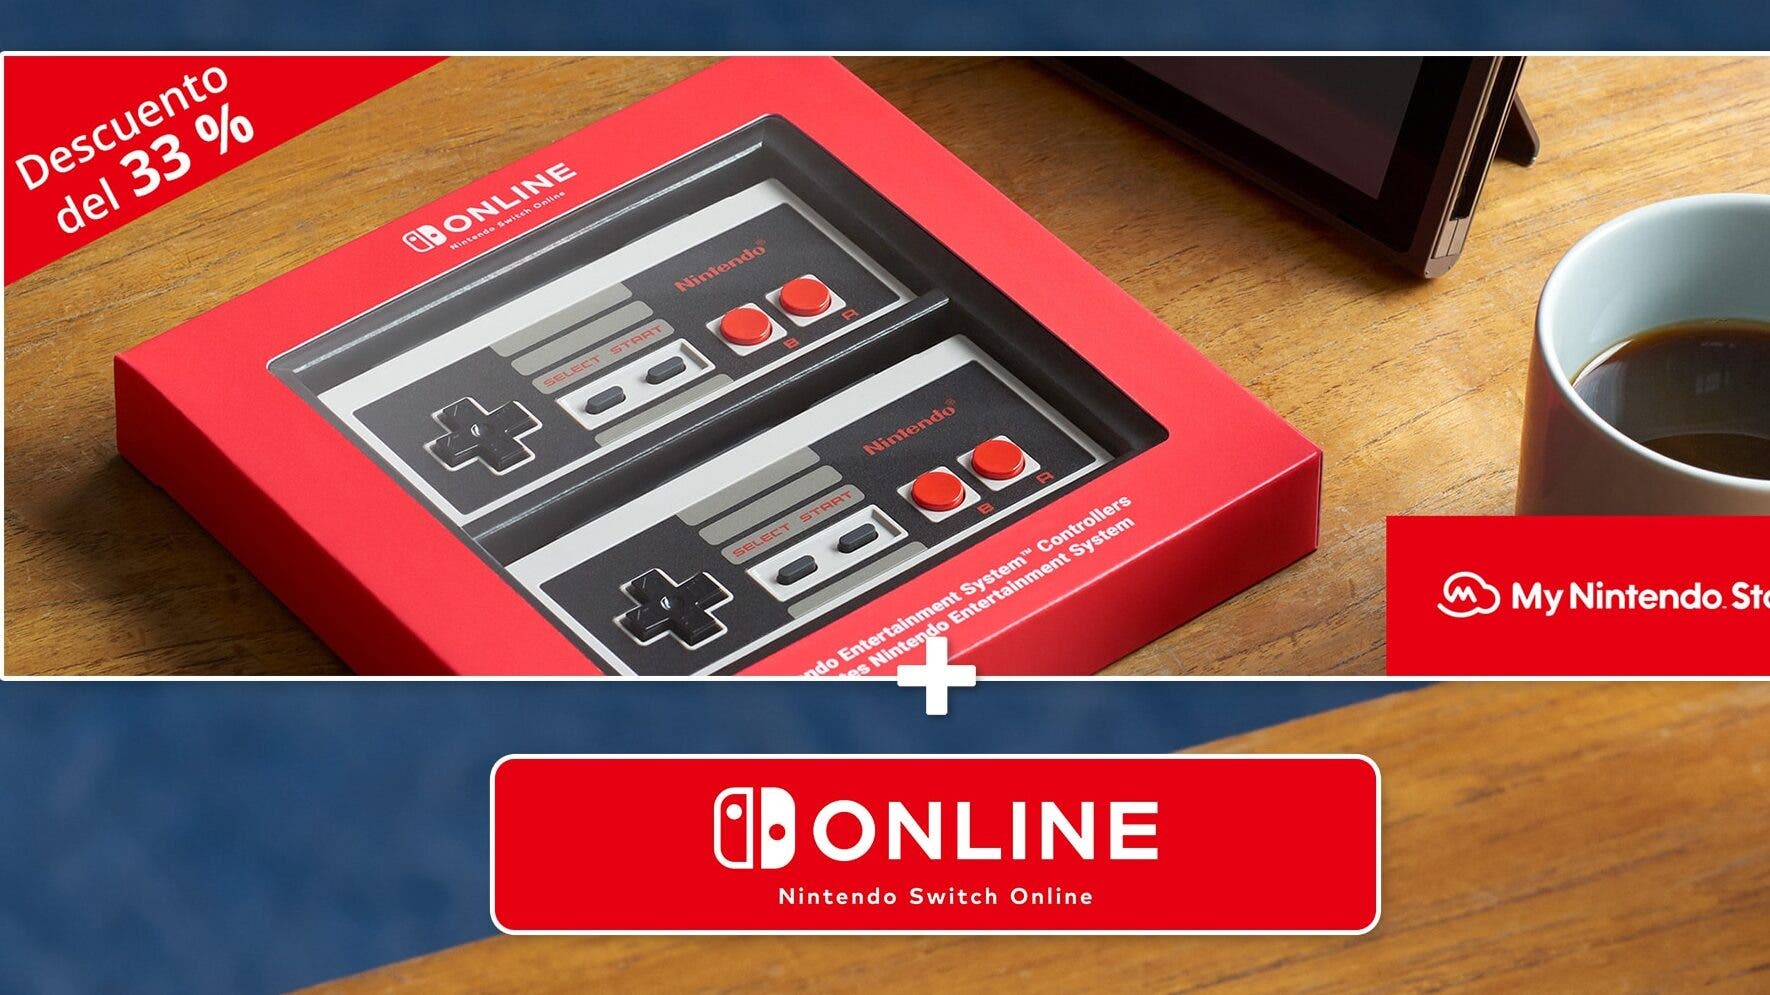 Ya puedes comprar los mandos de NES con un 33 % de descuento al adquirir una suscripción individual o familiar a Nintendo Switch Online hasta el 31 de mayo